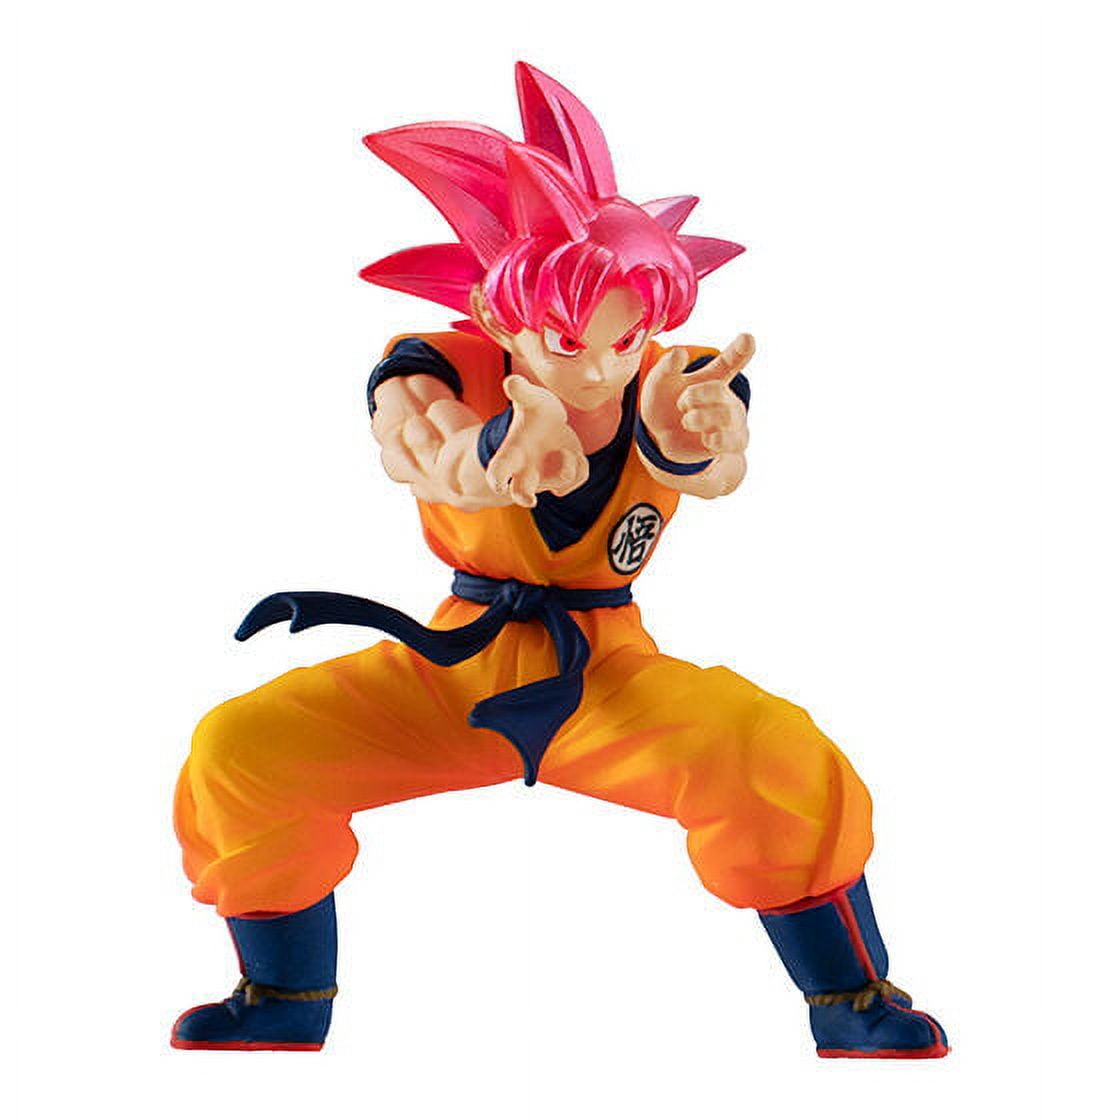 Super saiyan GOD Goku